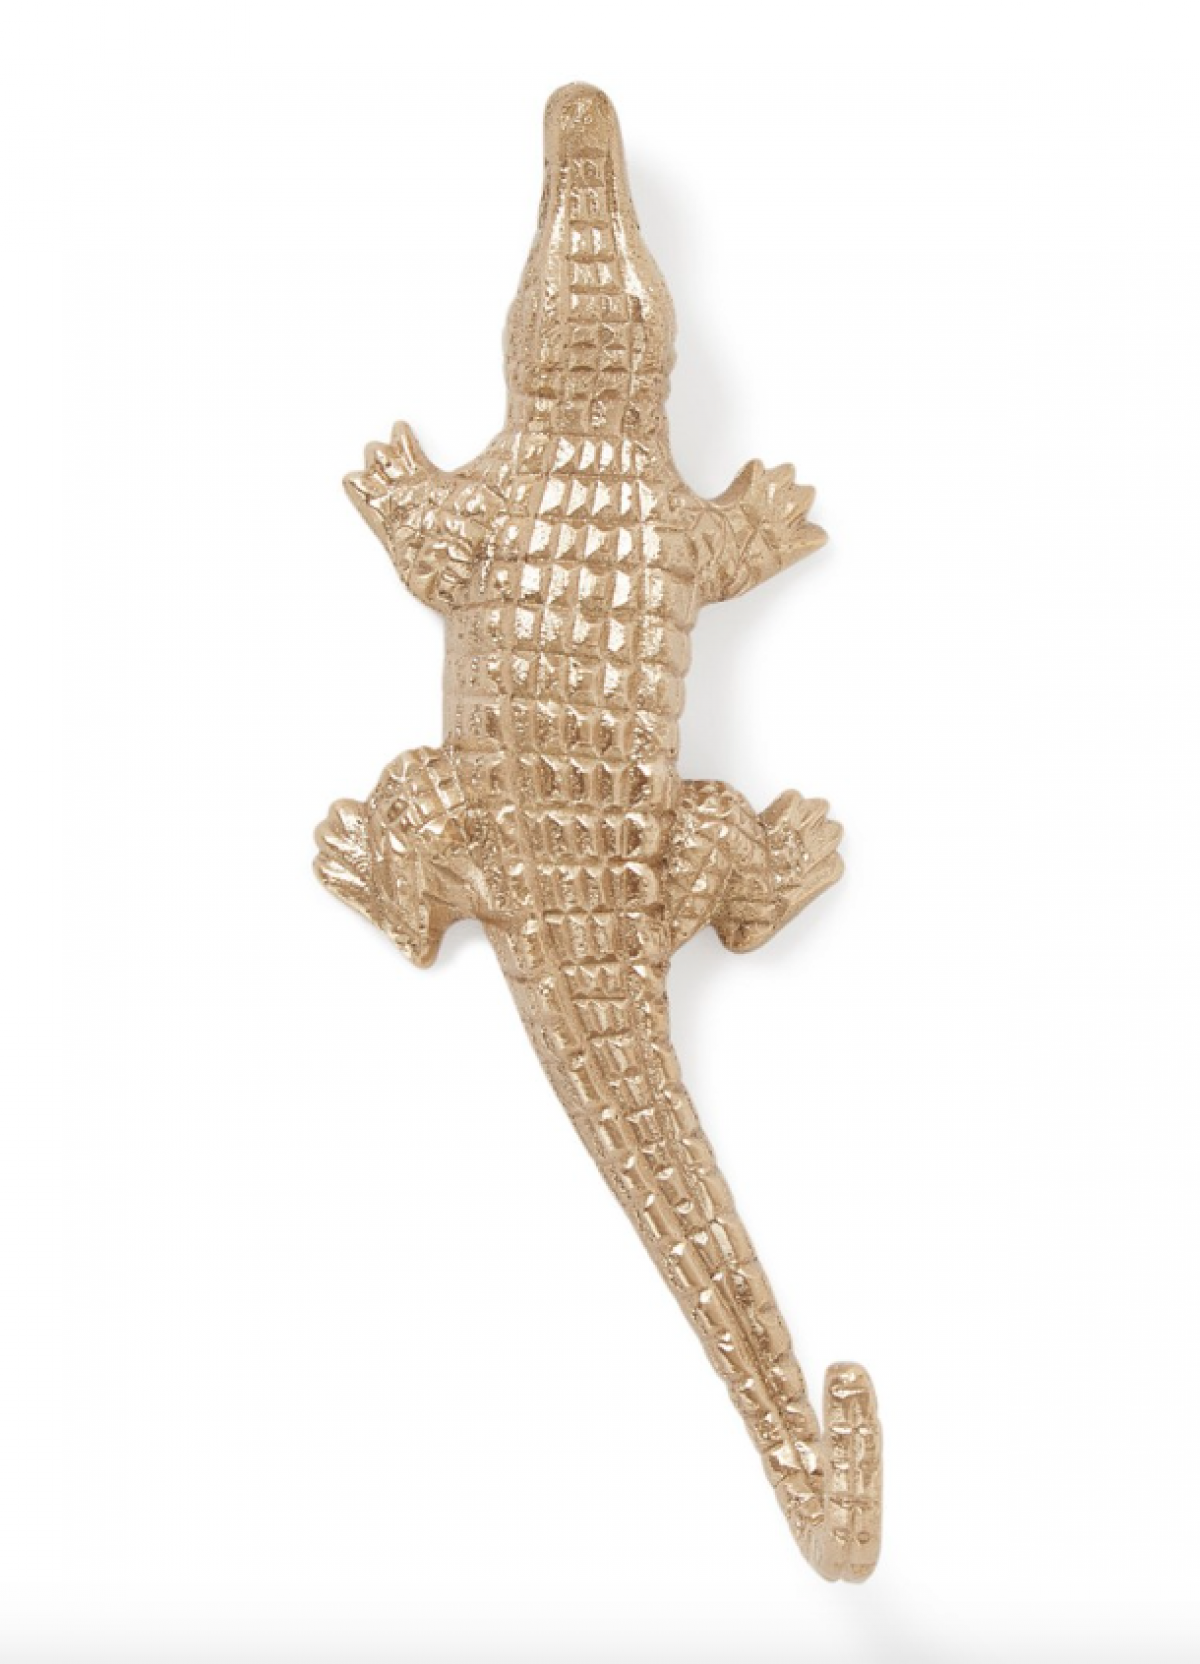 Messing wandhaak in de vorm van een krokodil